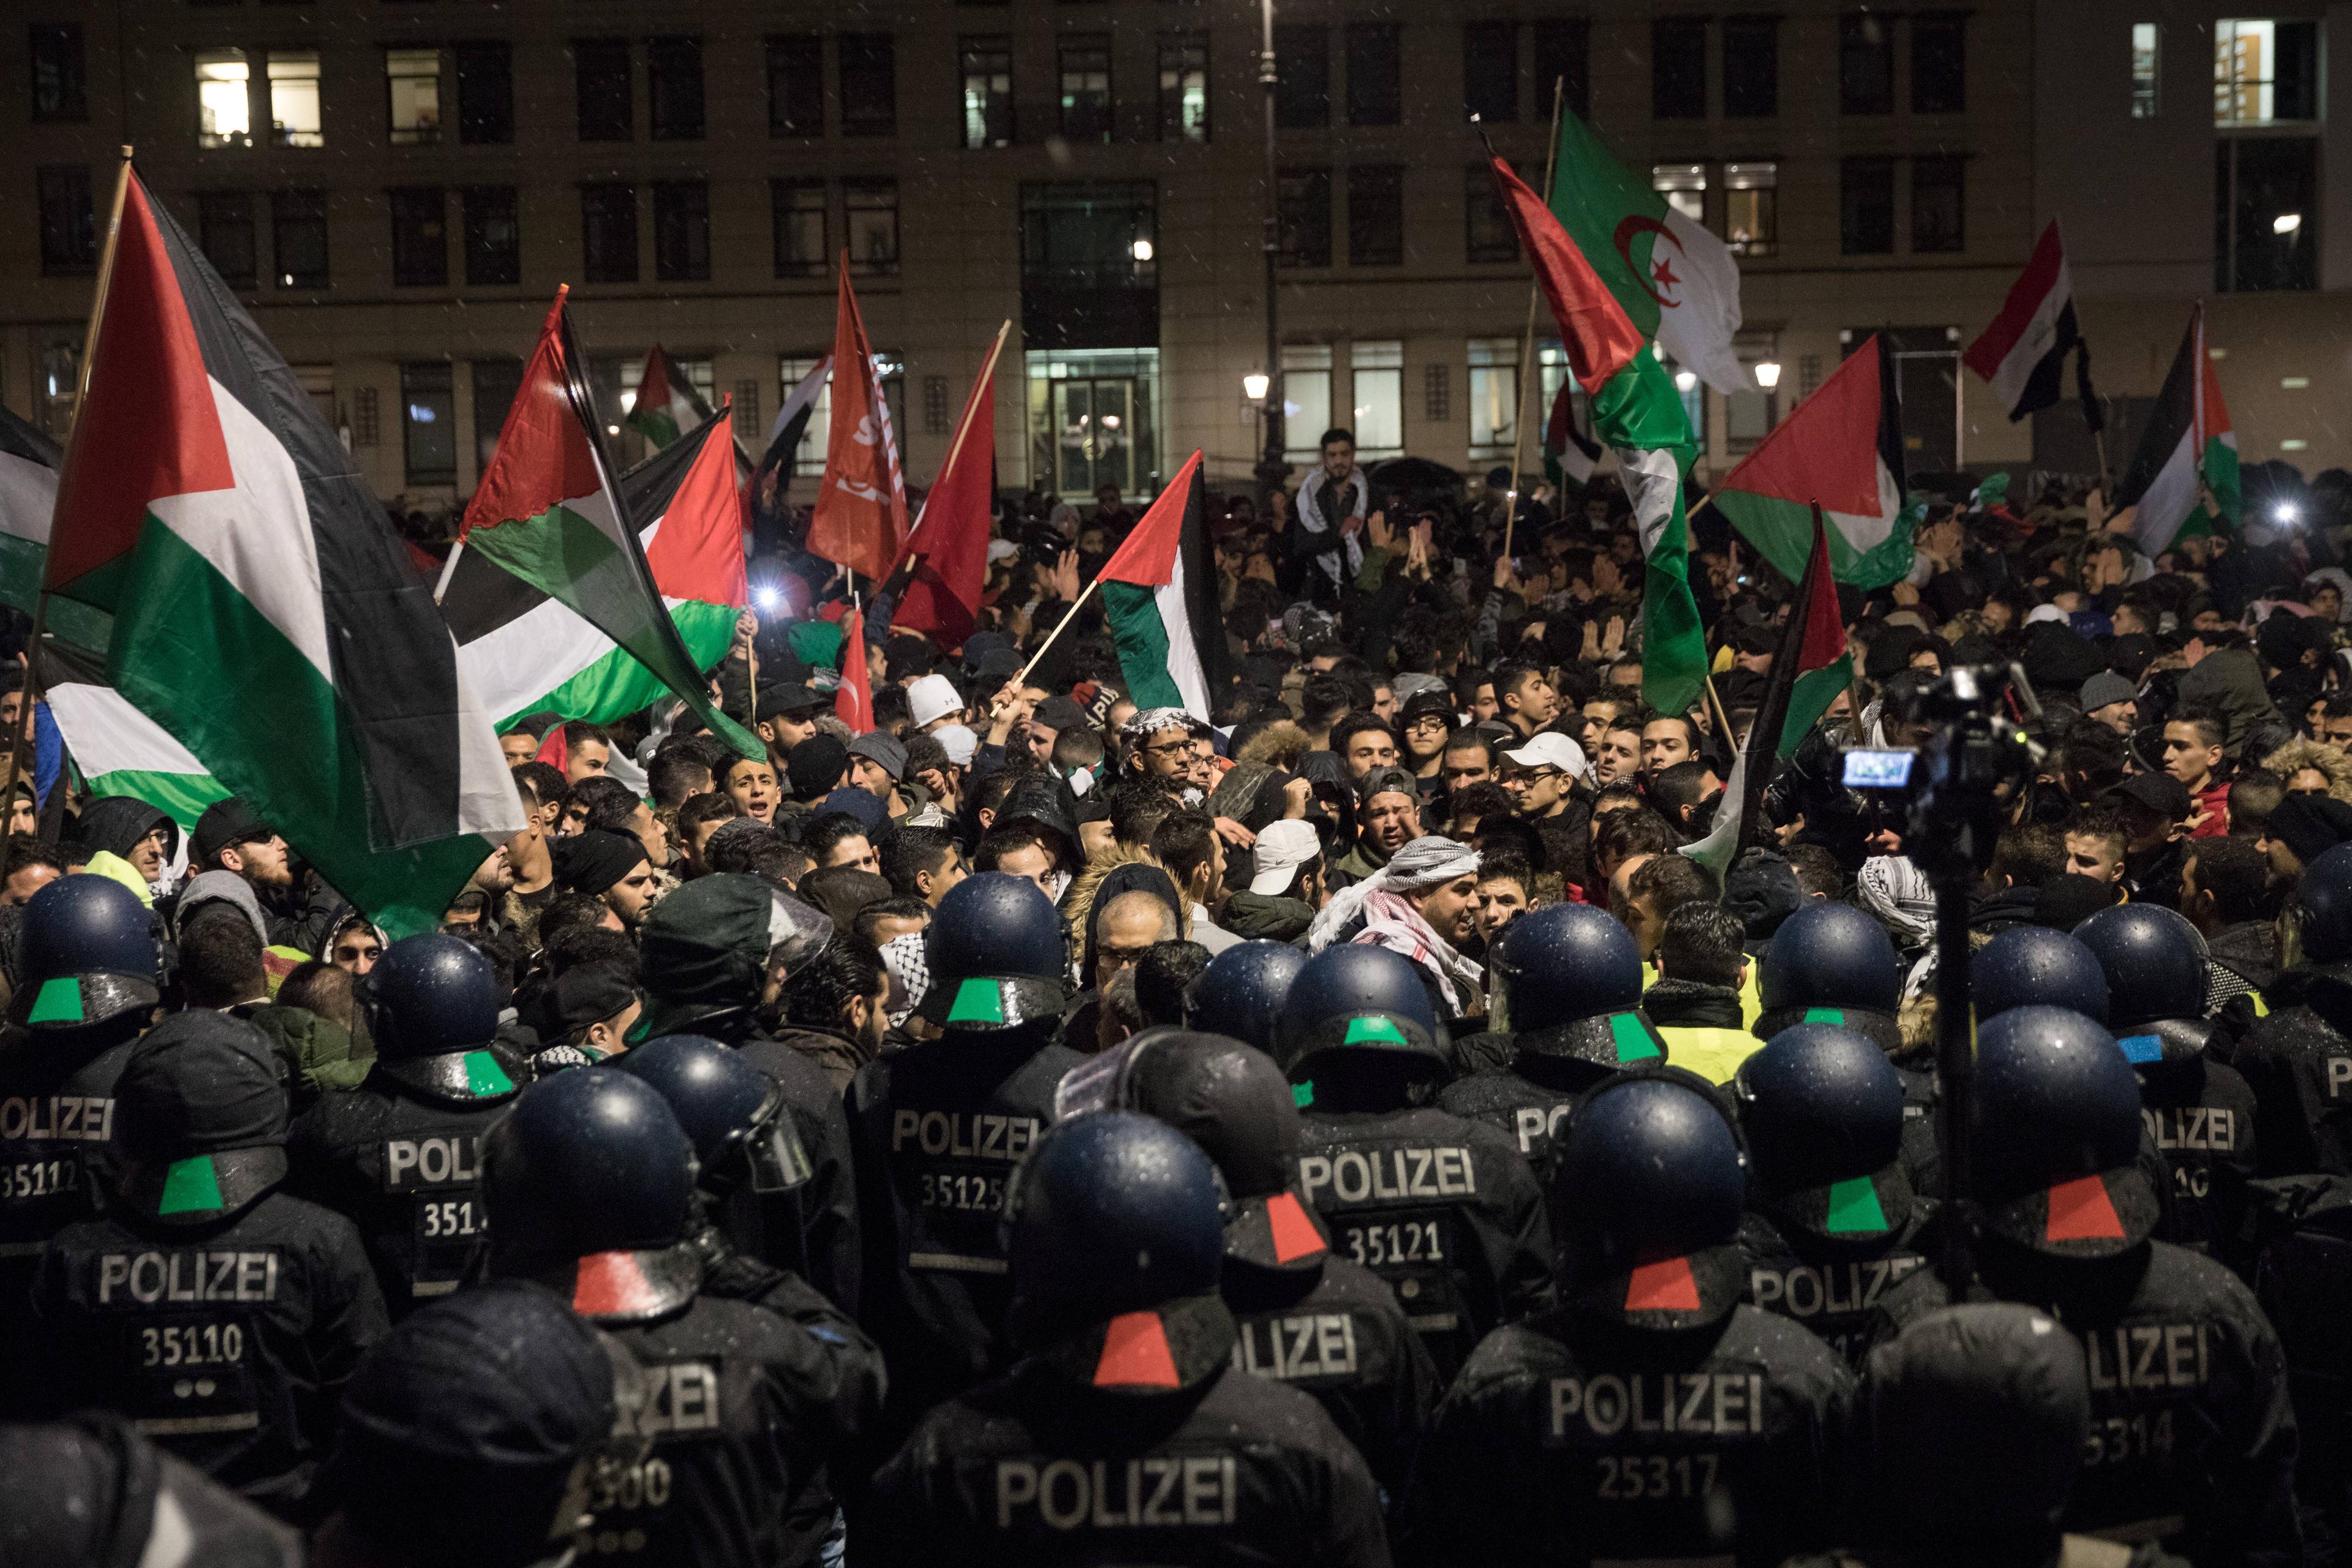 Pro-palästinensische Demonstration wird von hohem Polizeiaufgebot begleitet, Berlin, 8. Dezember 2017.